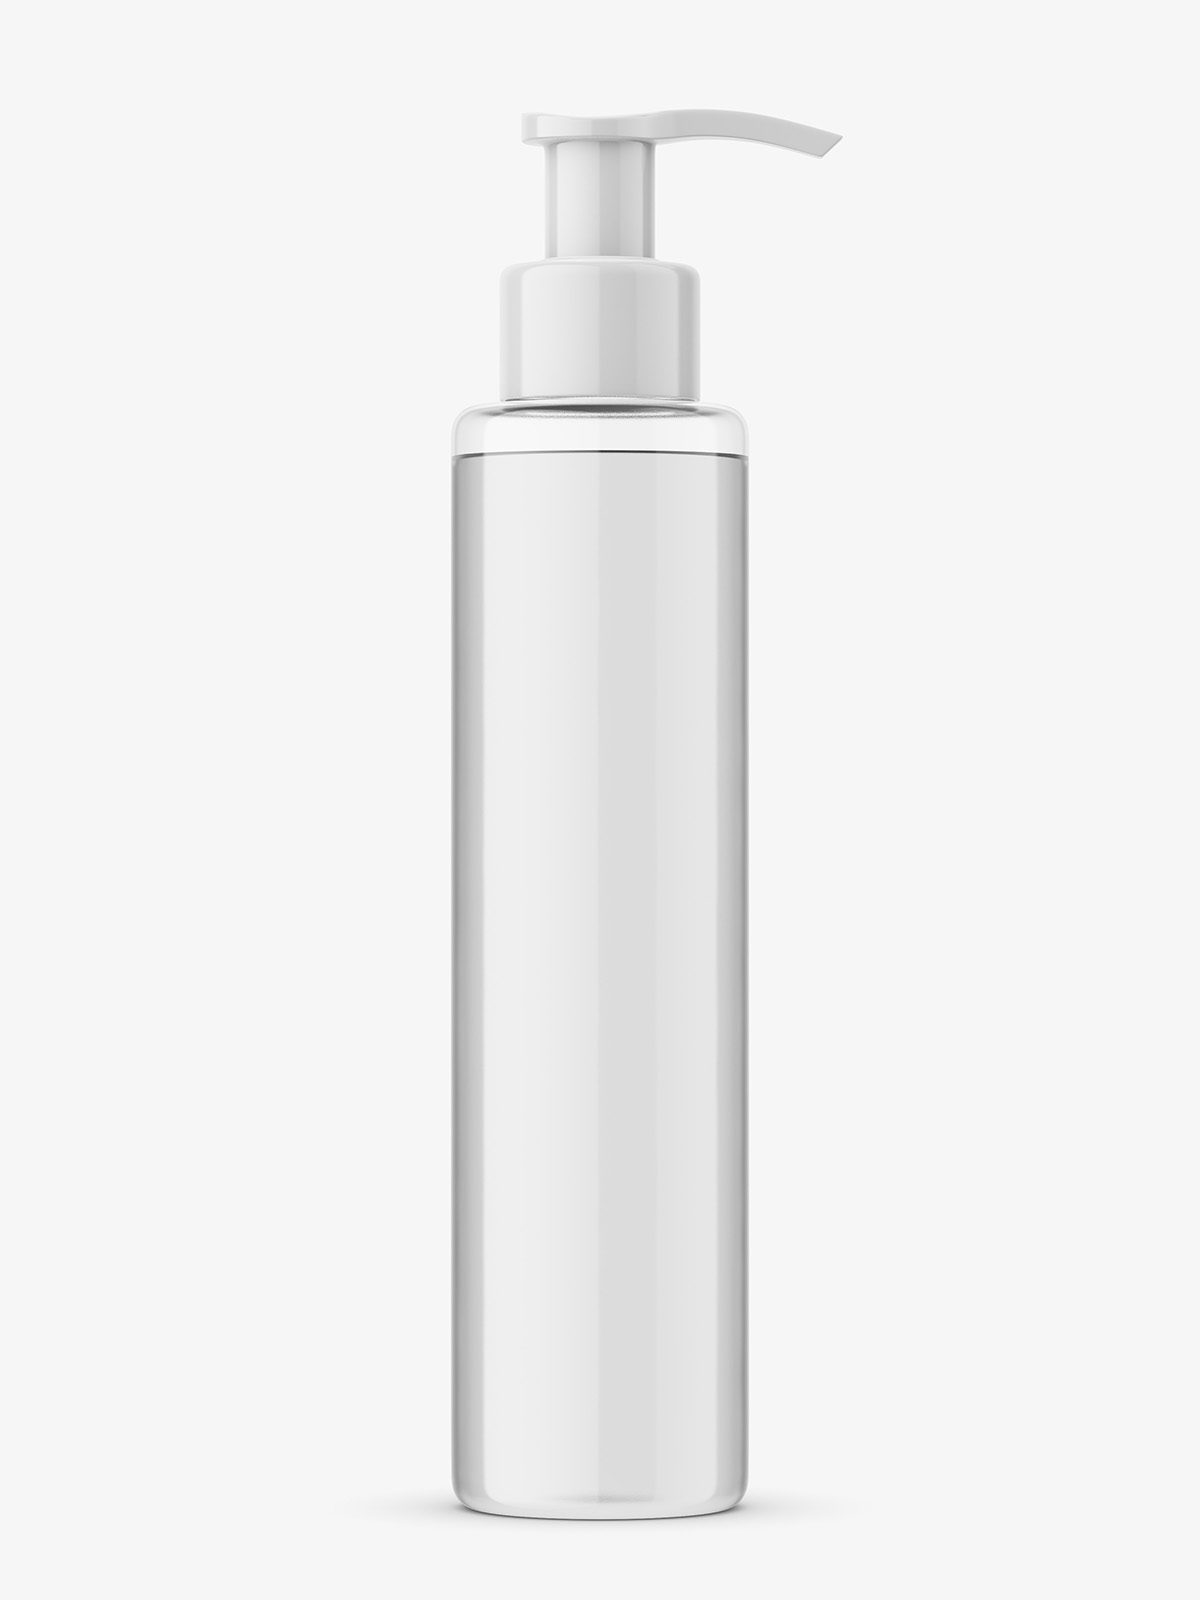 Download Transparent Bottle With Pump Mockup Smarty Mockups